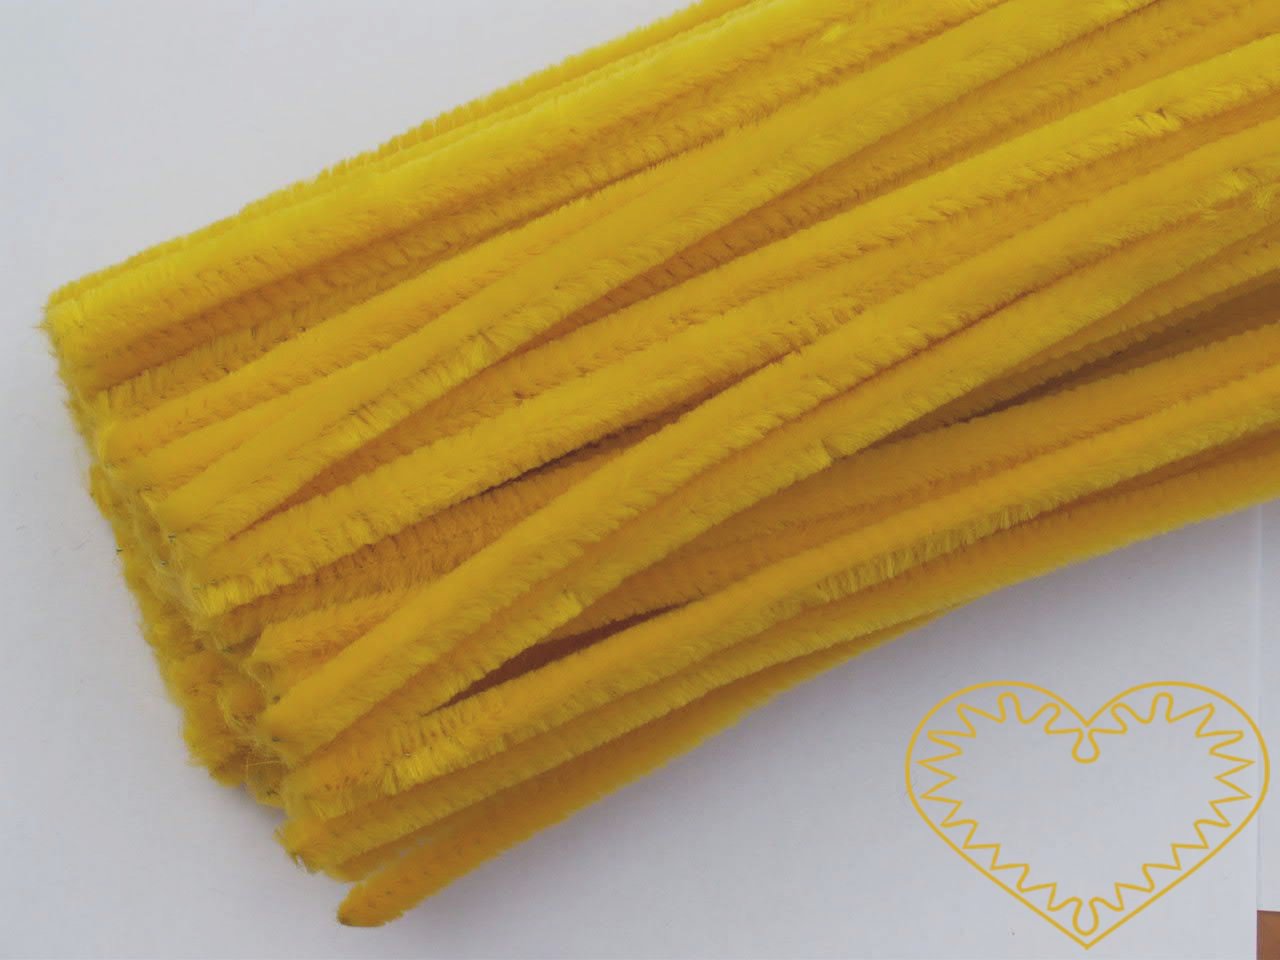 Modelovací chlupatý drátek žlutý - délka cca 30 cm. Drátěná tyčinka opletená vláknem se používá k výrobě různých hraček i ozdob. Lze ji všelijak tvarovat, kroutit, splétat, stříhat, kombinovat například s bambulkami, lepit. Drátek skvěle imituje tyk